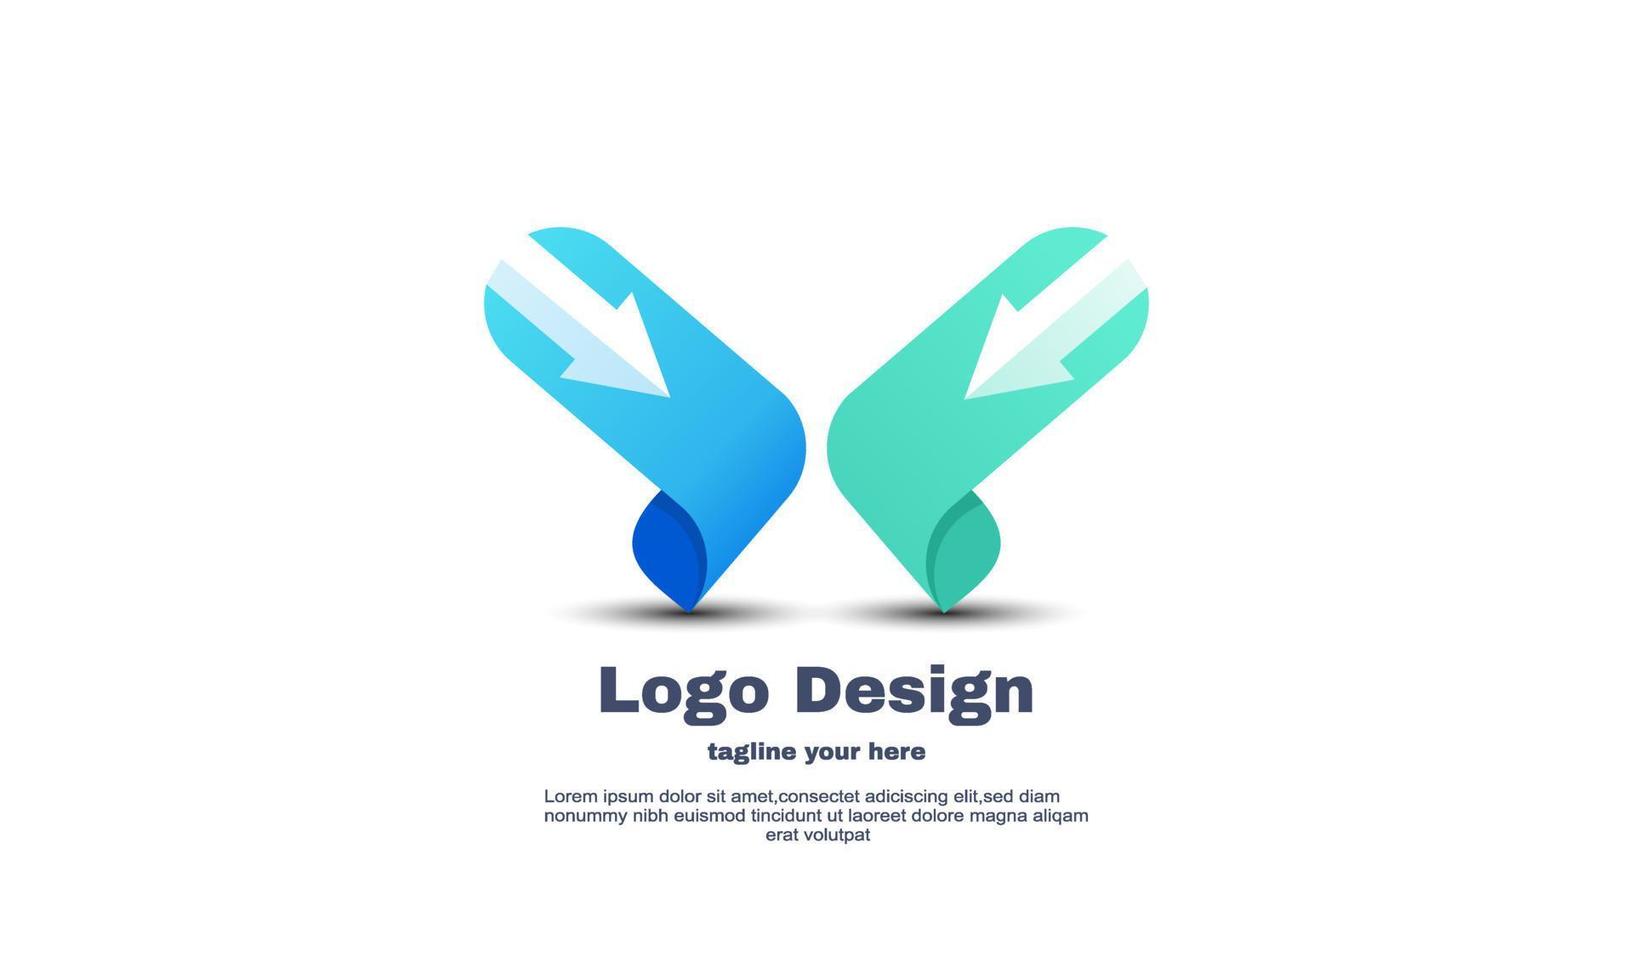 diseño único del símbolo abstracto del vector del logotipo de la flecha x aislado en